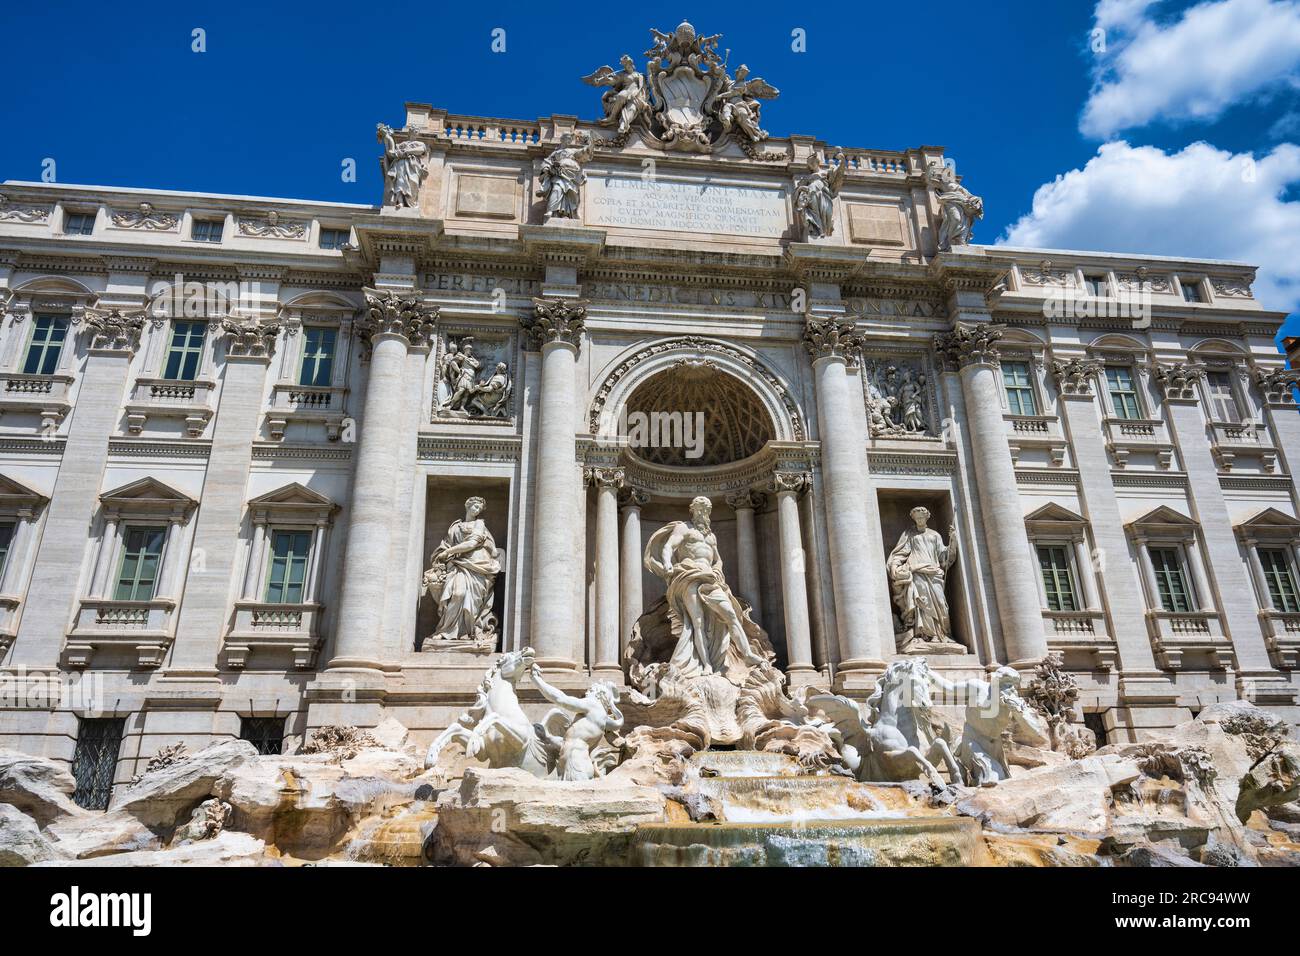 La façade du Palazzo poli forme la toile de fond de la fontaine de Trevi (Fontana di Trevi) sur la Piazza di Trevi à Rome, dans la région du Latium, en Italie Banque D'Images